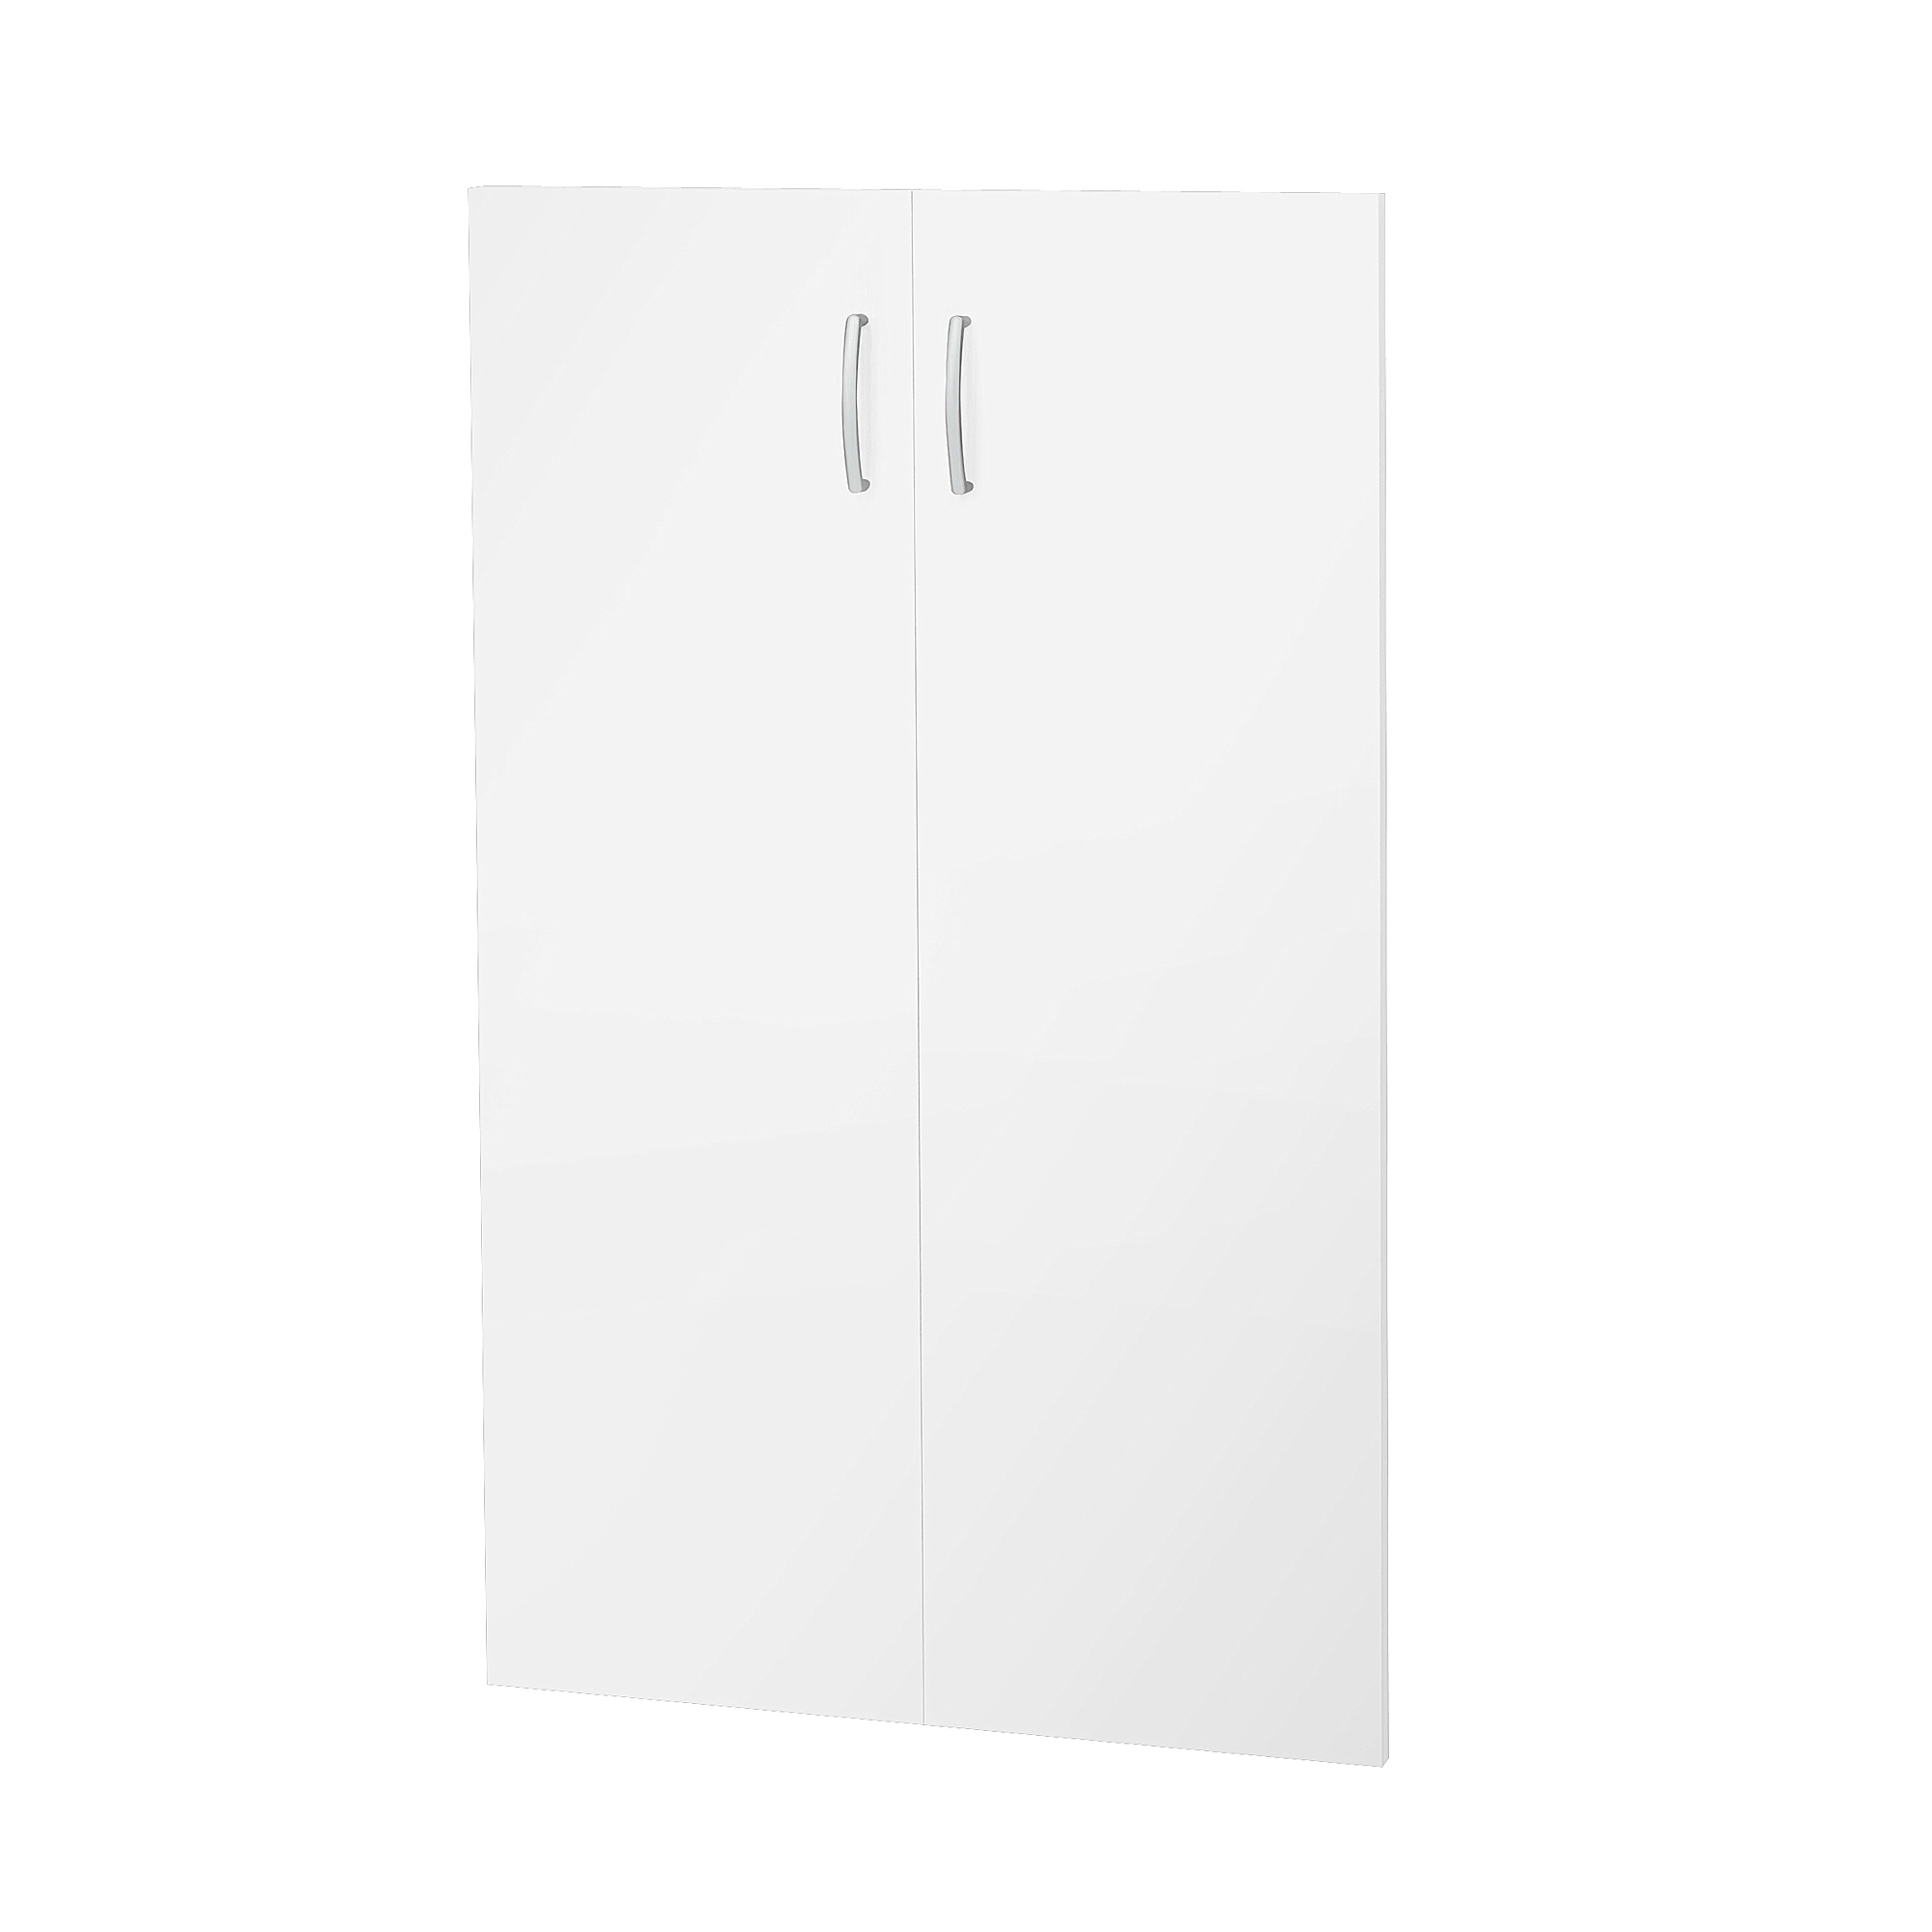 Dveře ke skříním FLEXUS, výška 1210 mm, bílá